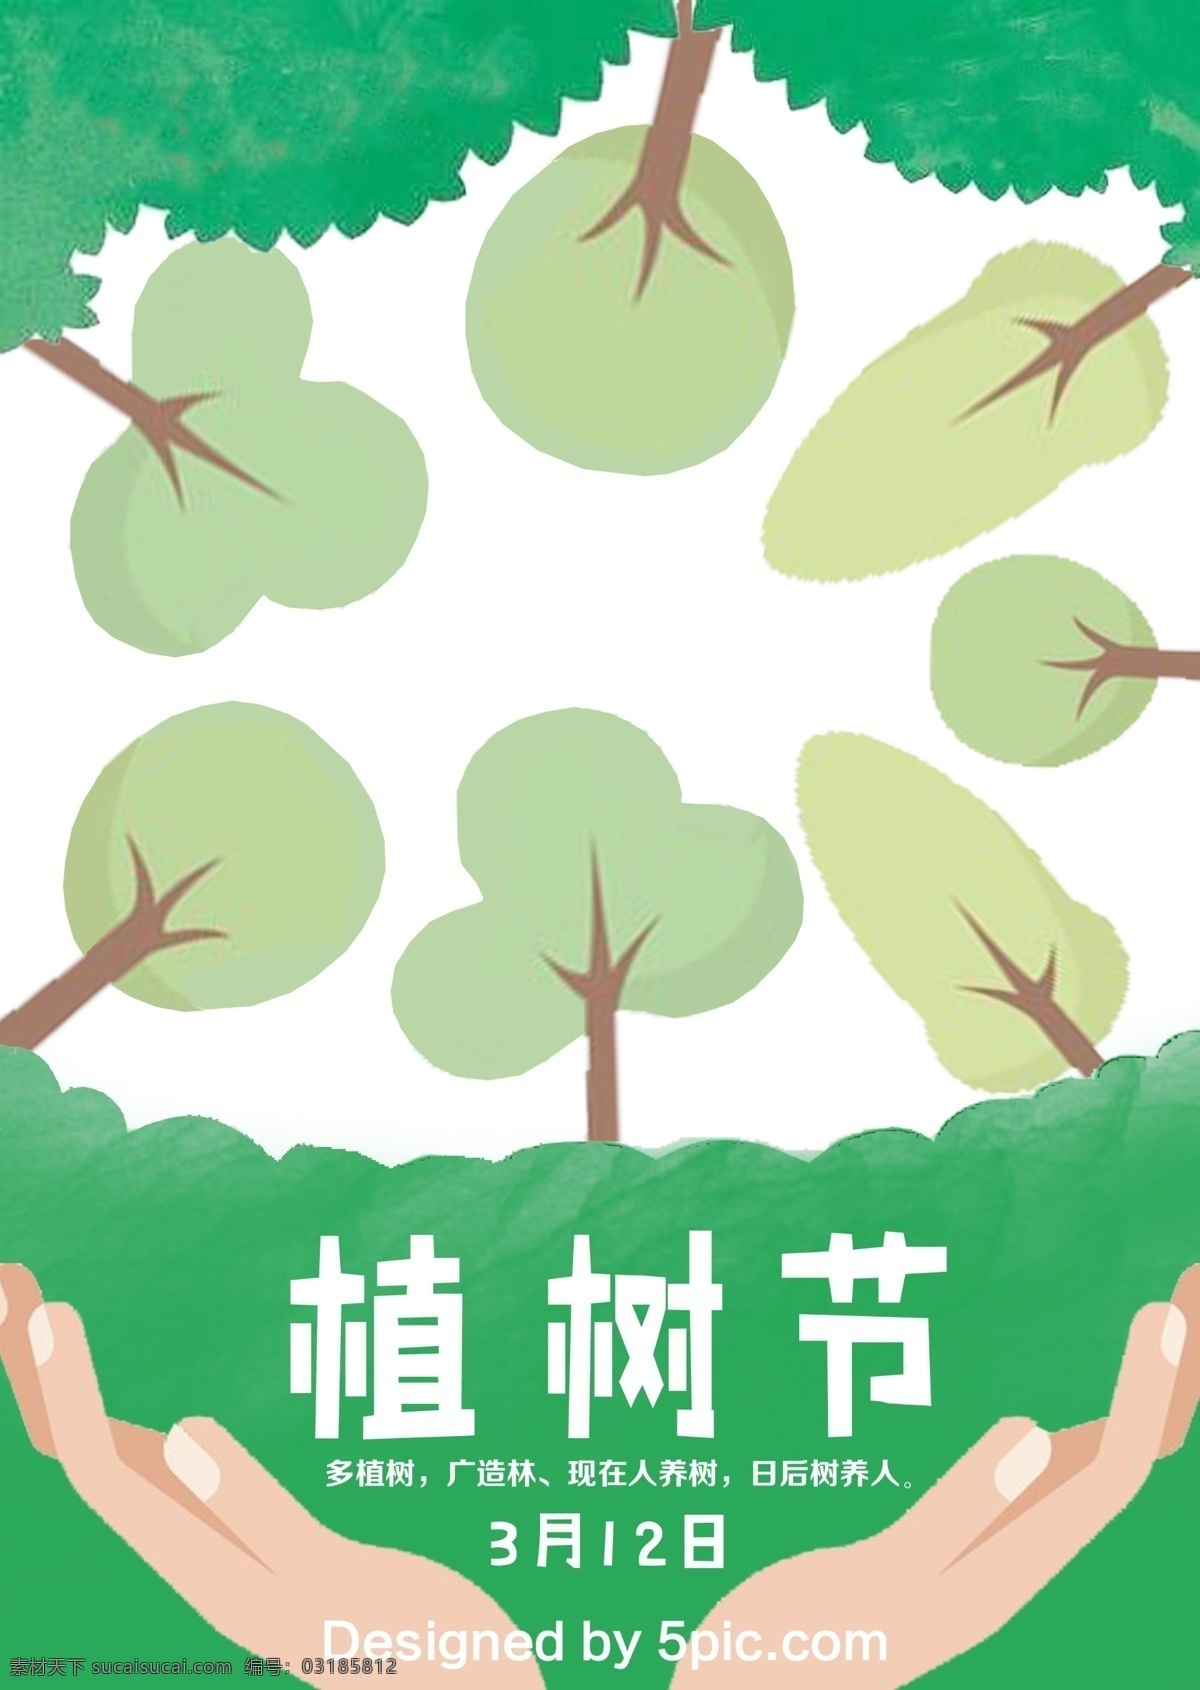 植树节 节日 爱护 地球 海报 3月12日 树 绿 卡通 树丛 手 公益海报 绿色 爱护地球